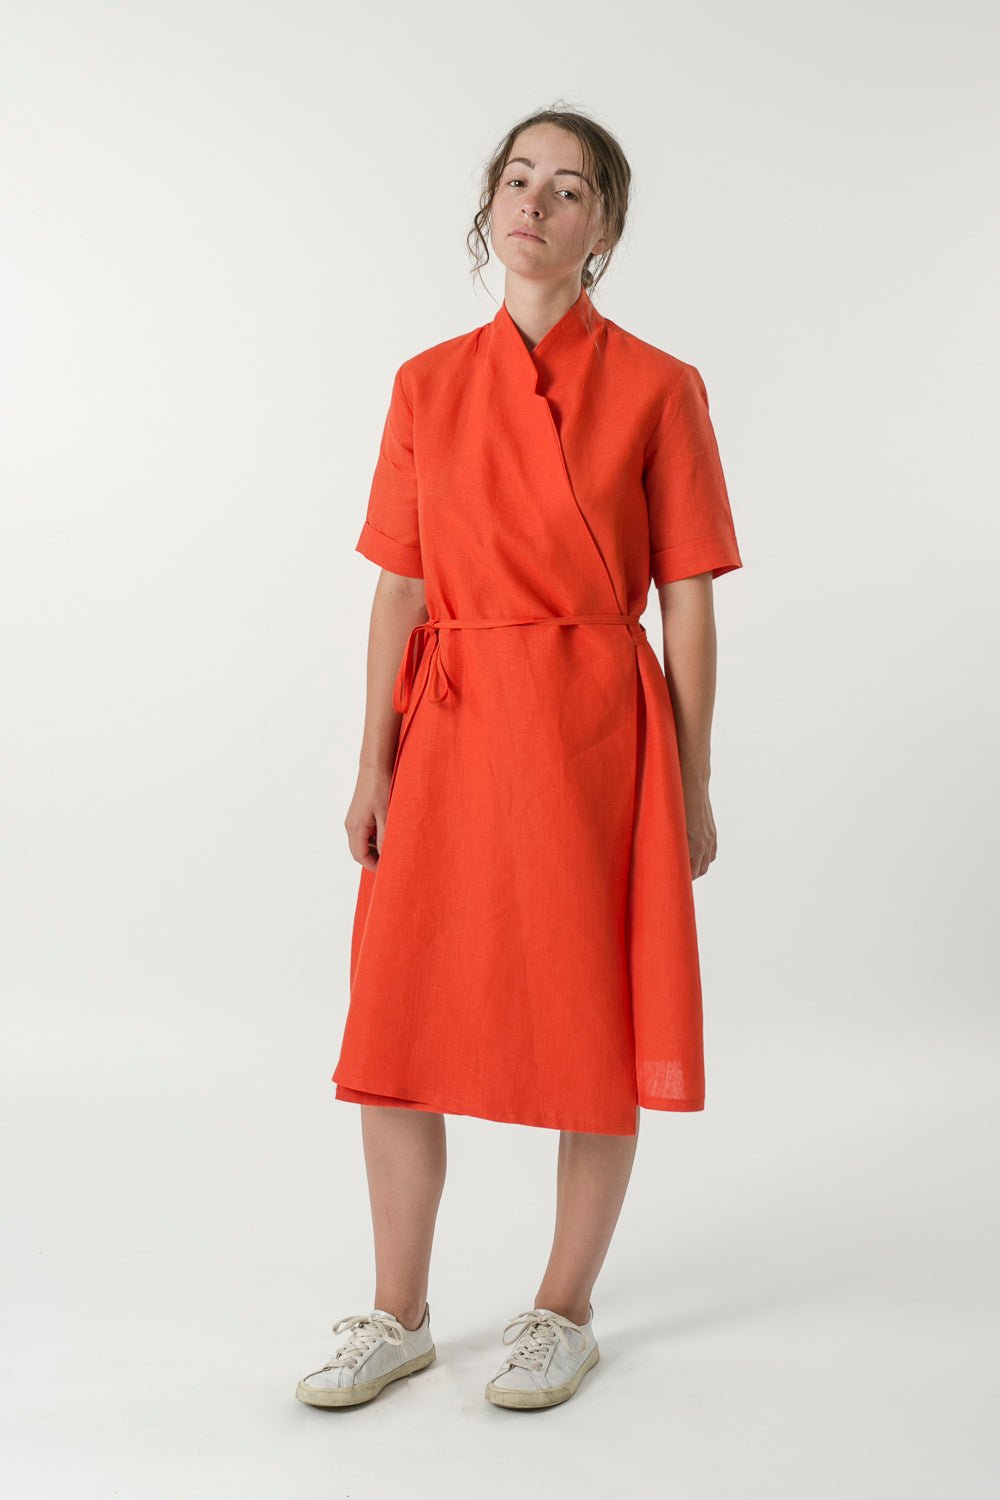 Hemp Linen Short Sleeve Wrap Dress - Ensemble Studios